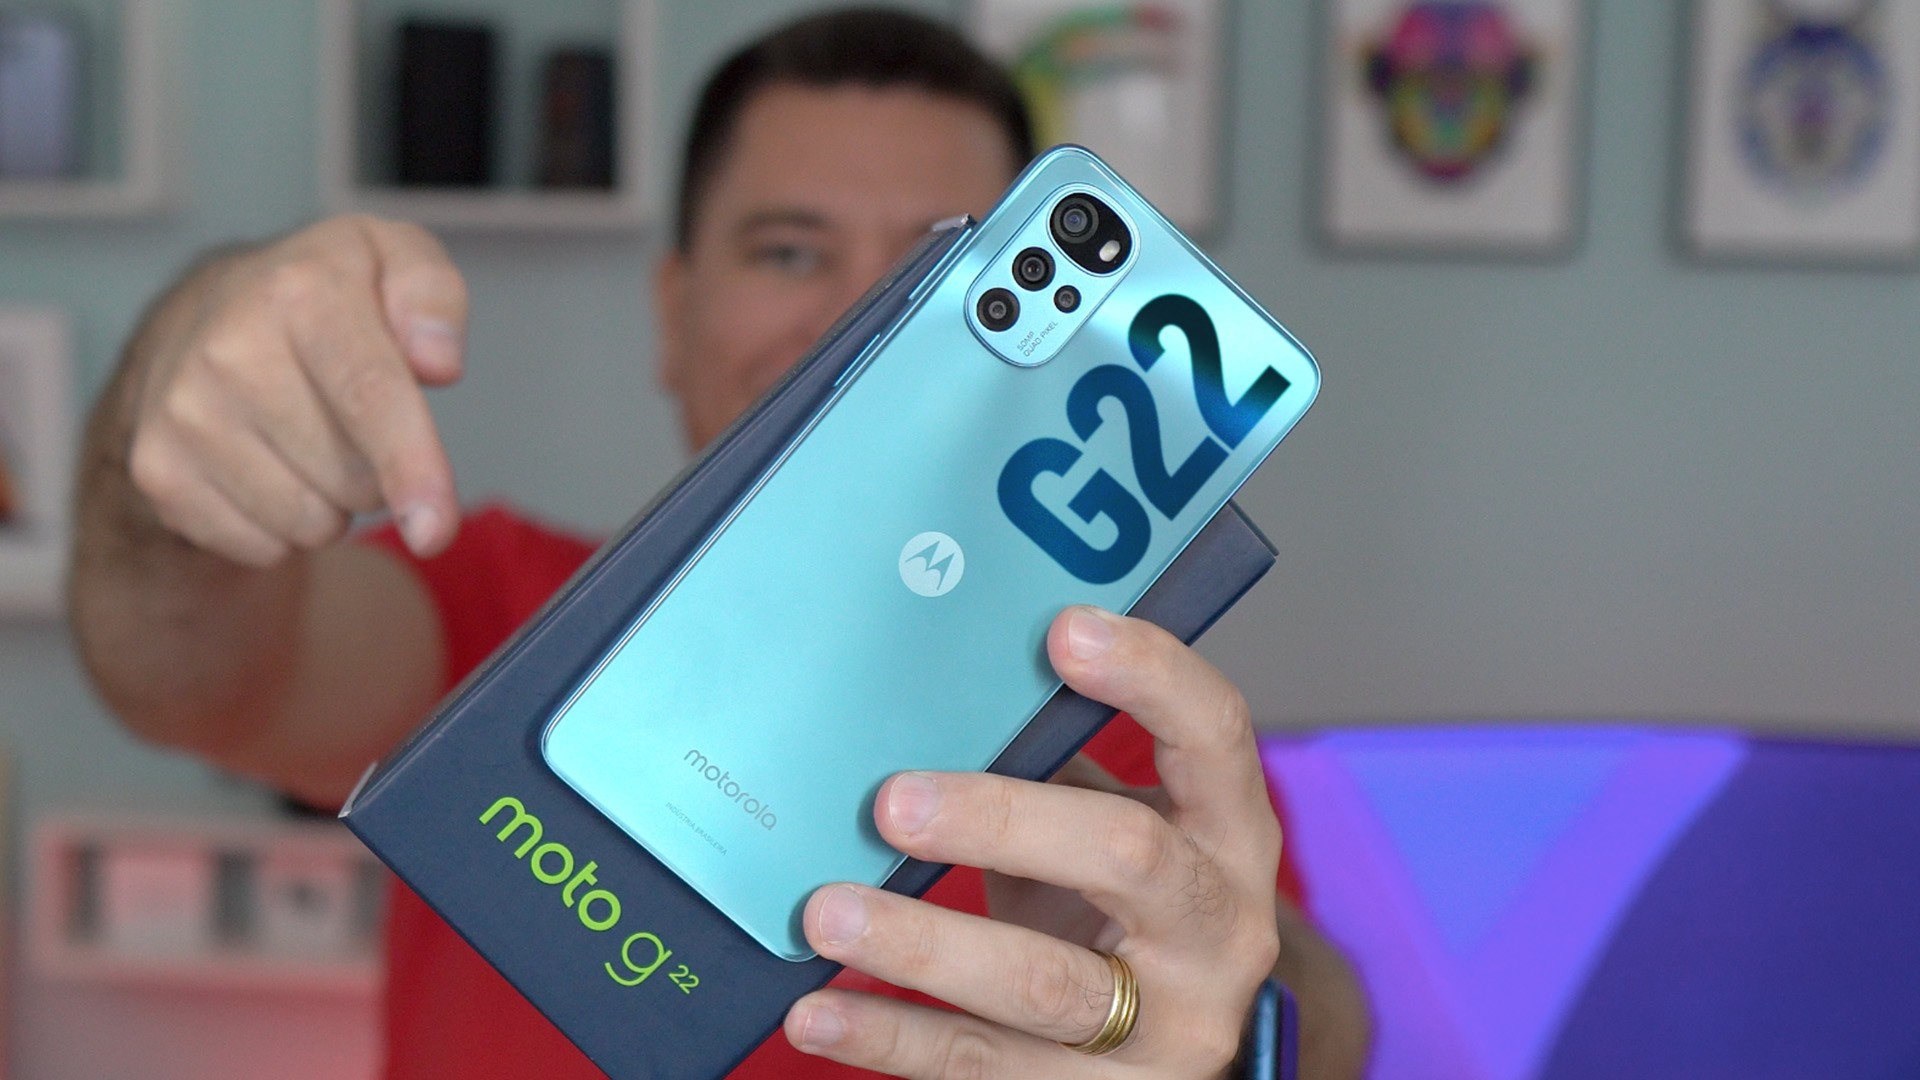 Moto G22 é bom? Veja ficha técnica e preço do celular da Motorola